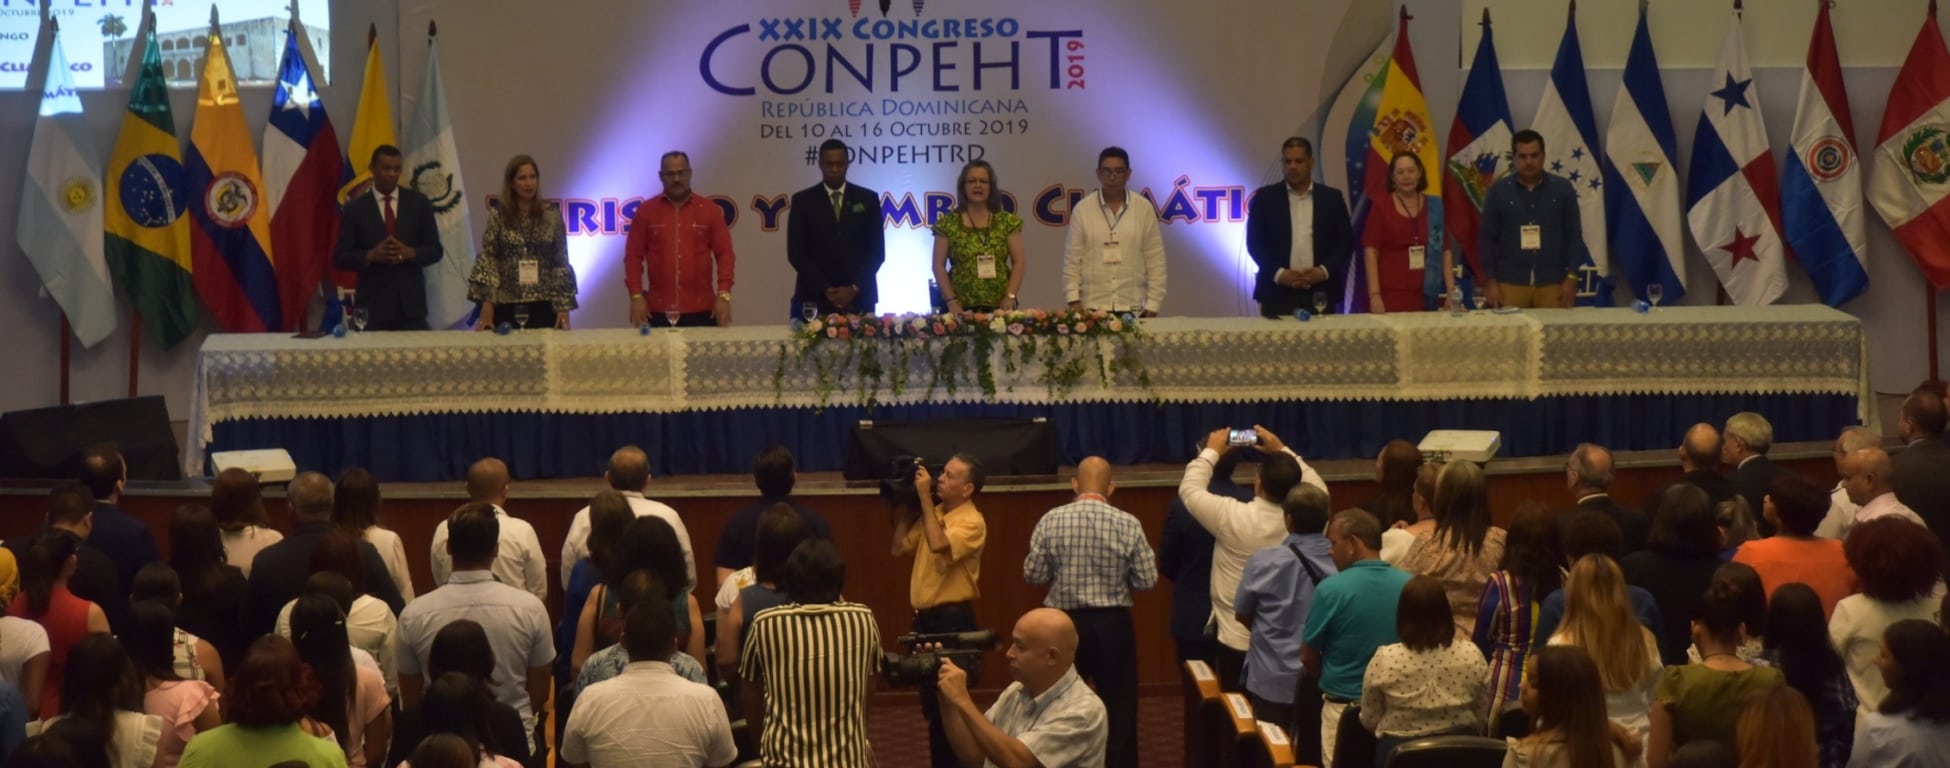 Confederación Panamericana de Escuelas de Turismo realiza congreso